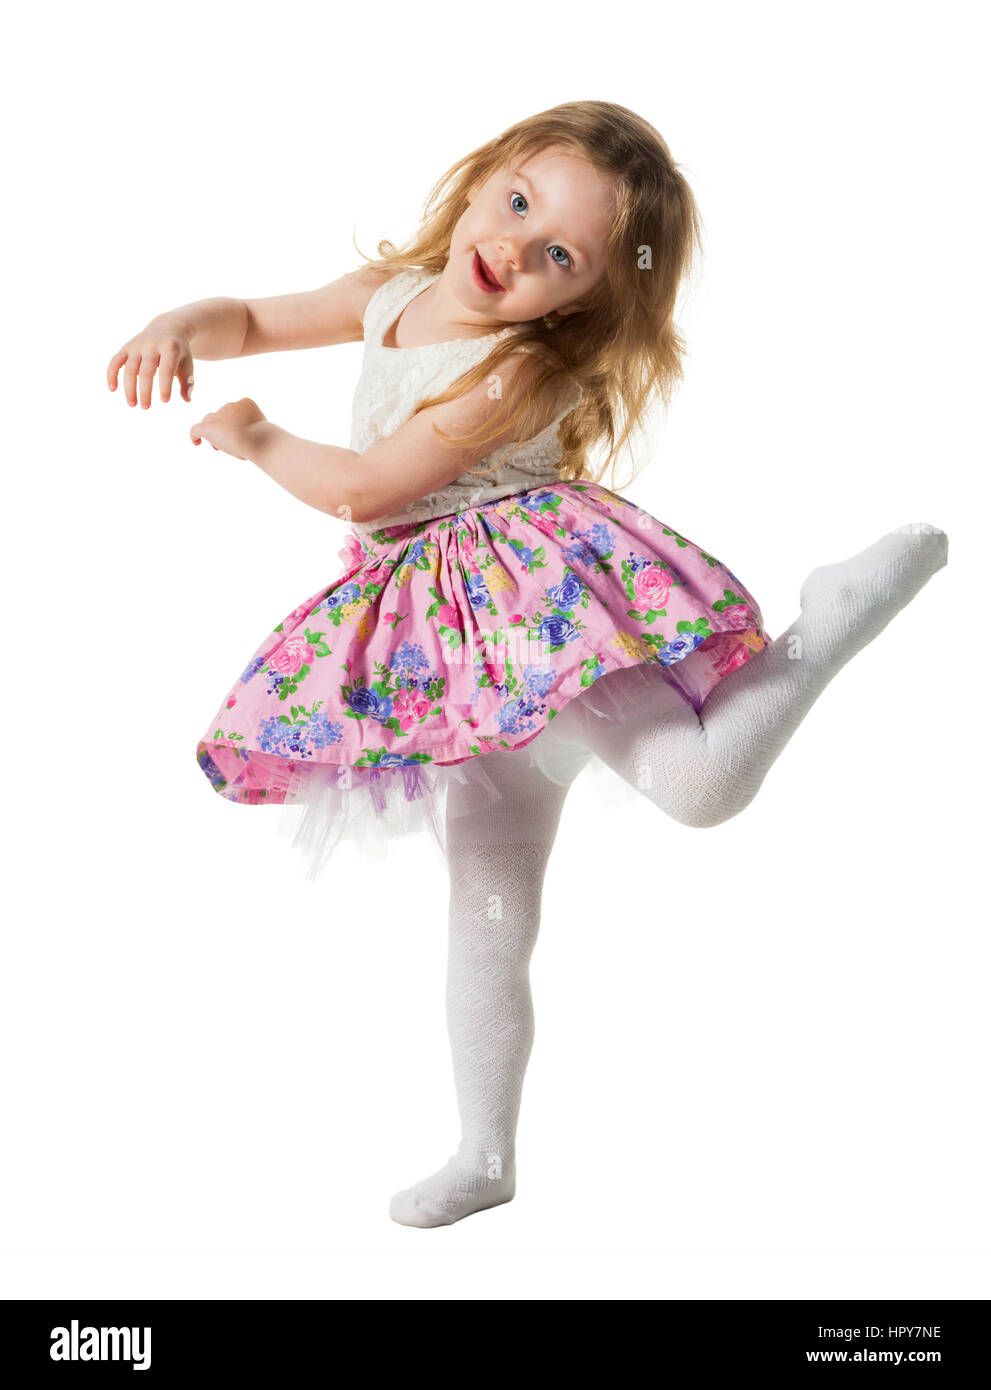 Poco carino ragazza jumping, acceso, dancing, divertendosi. Isolato su sfondo bianco Foto Stock